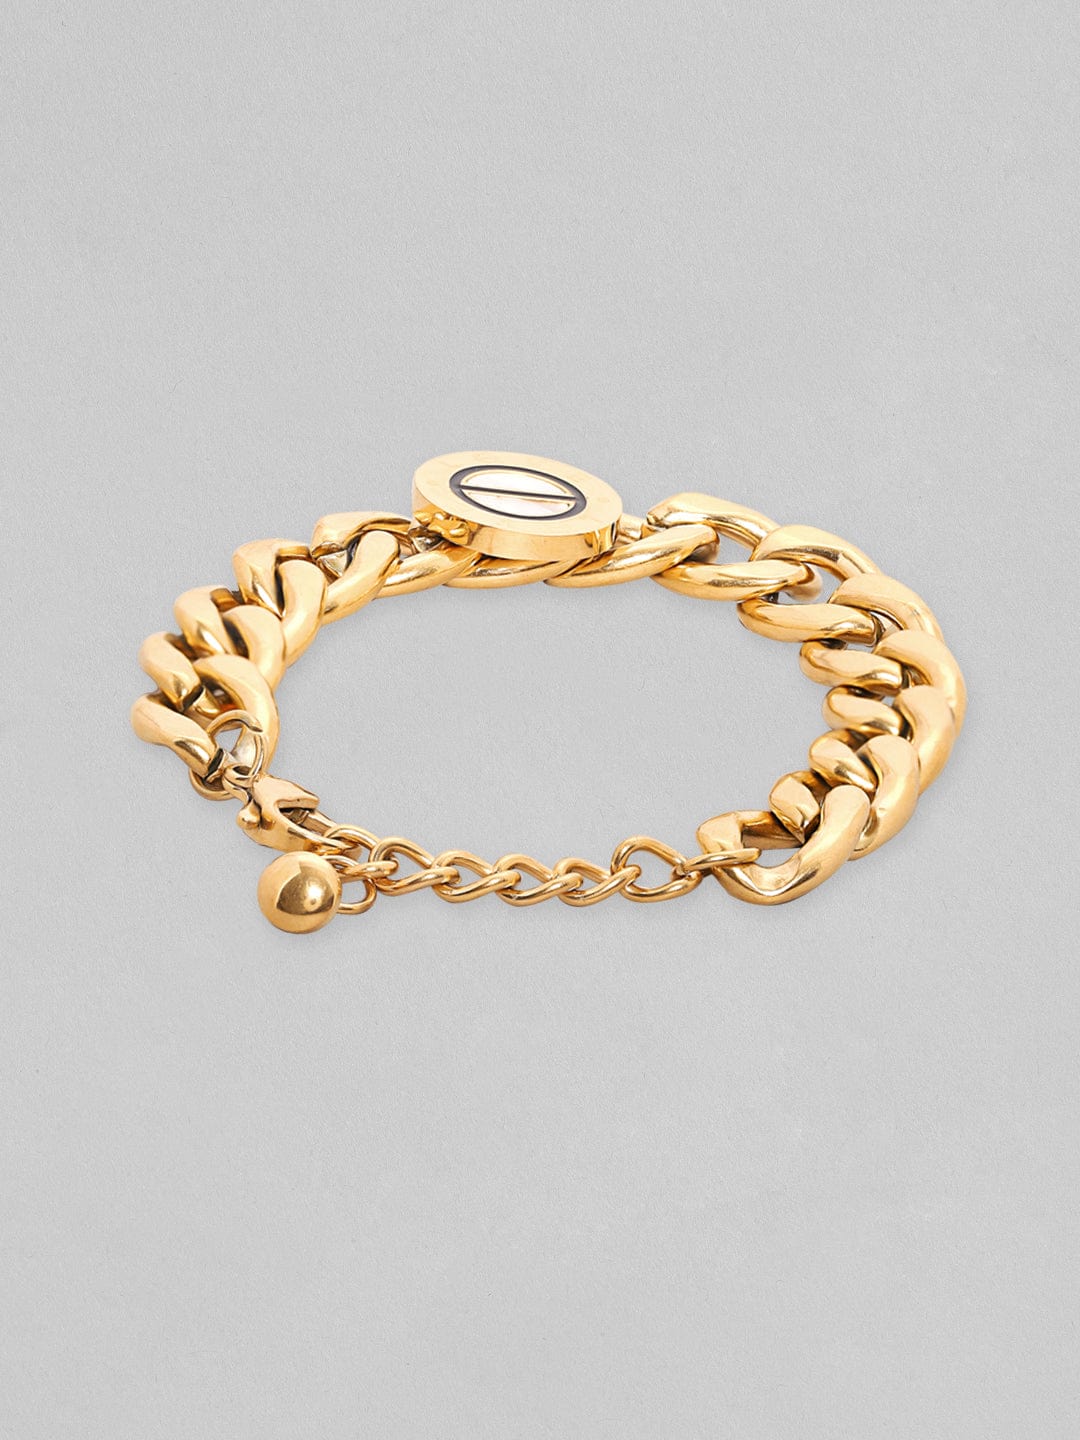 Rubans Voguish Gold Tonedstainless Steel Cuban Link Bracelet Bangles & Bracelets